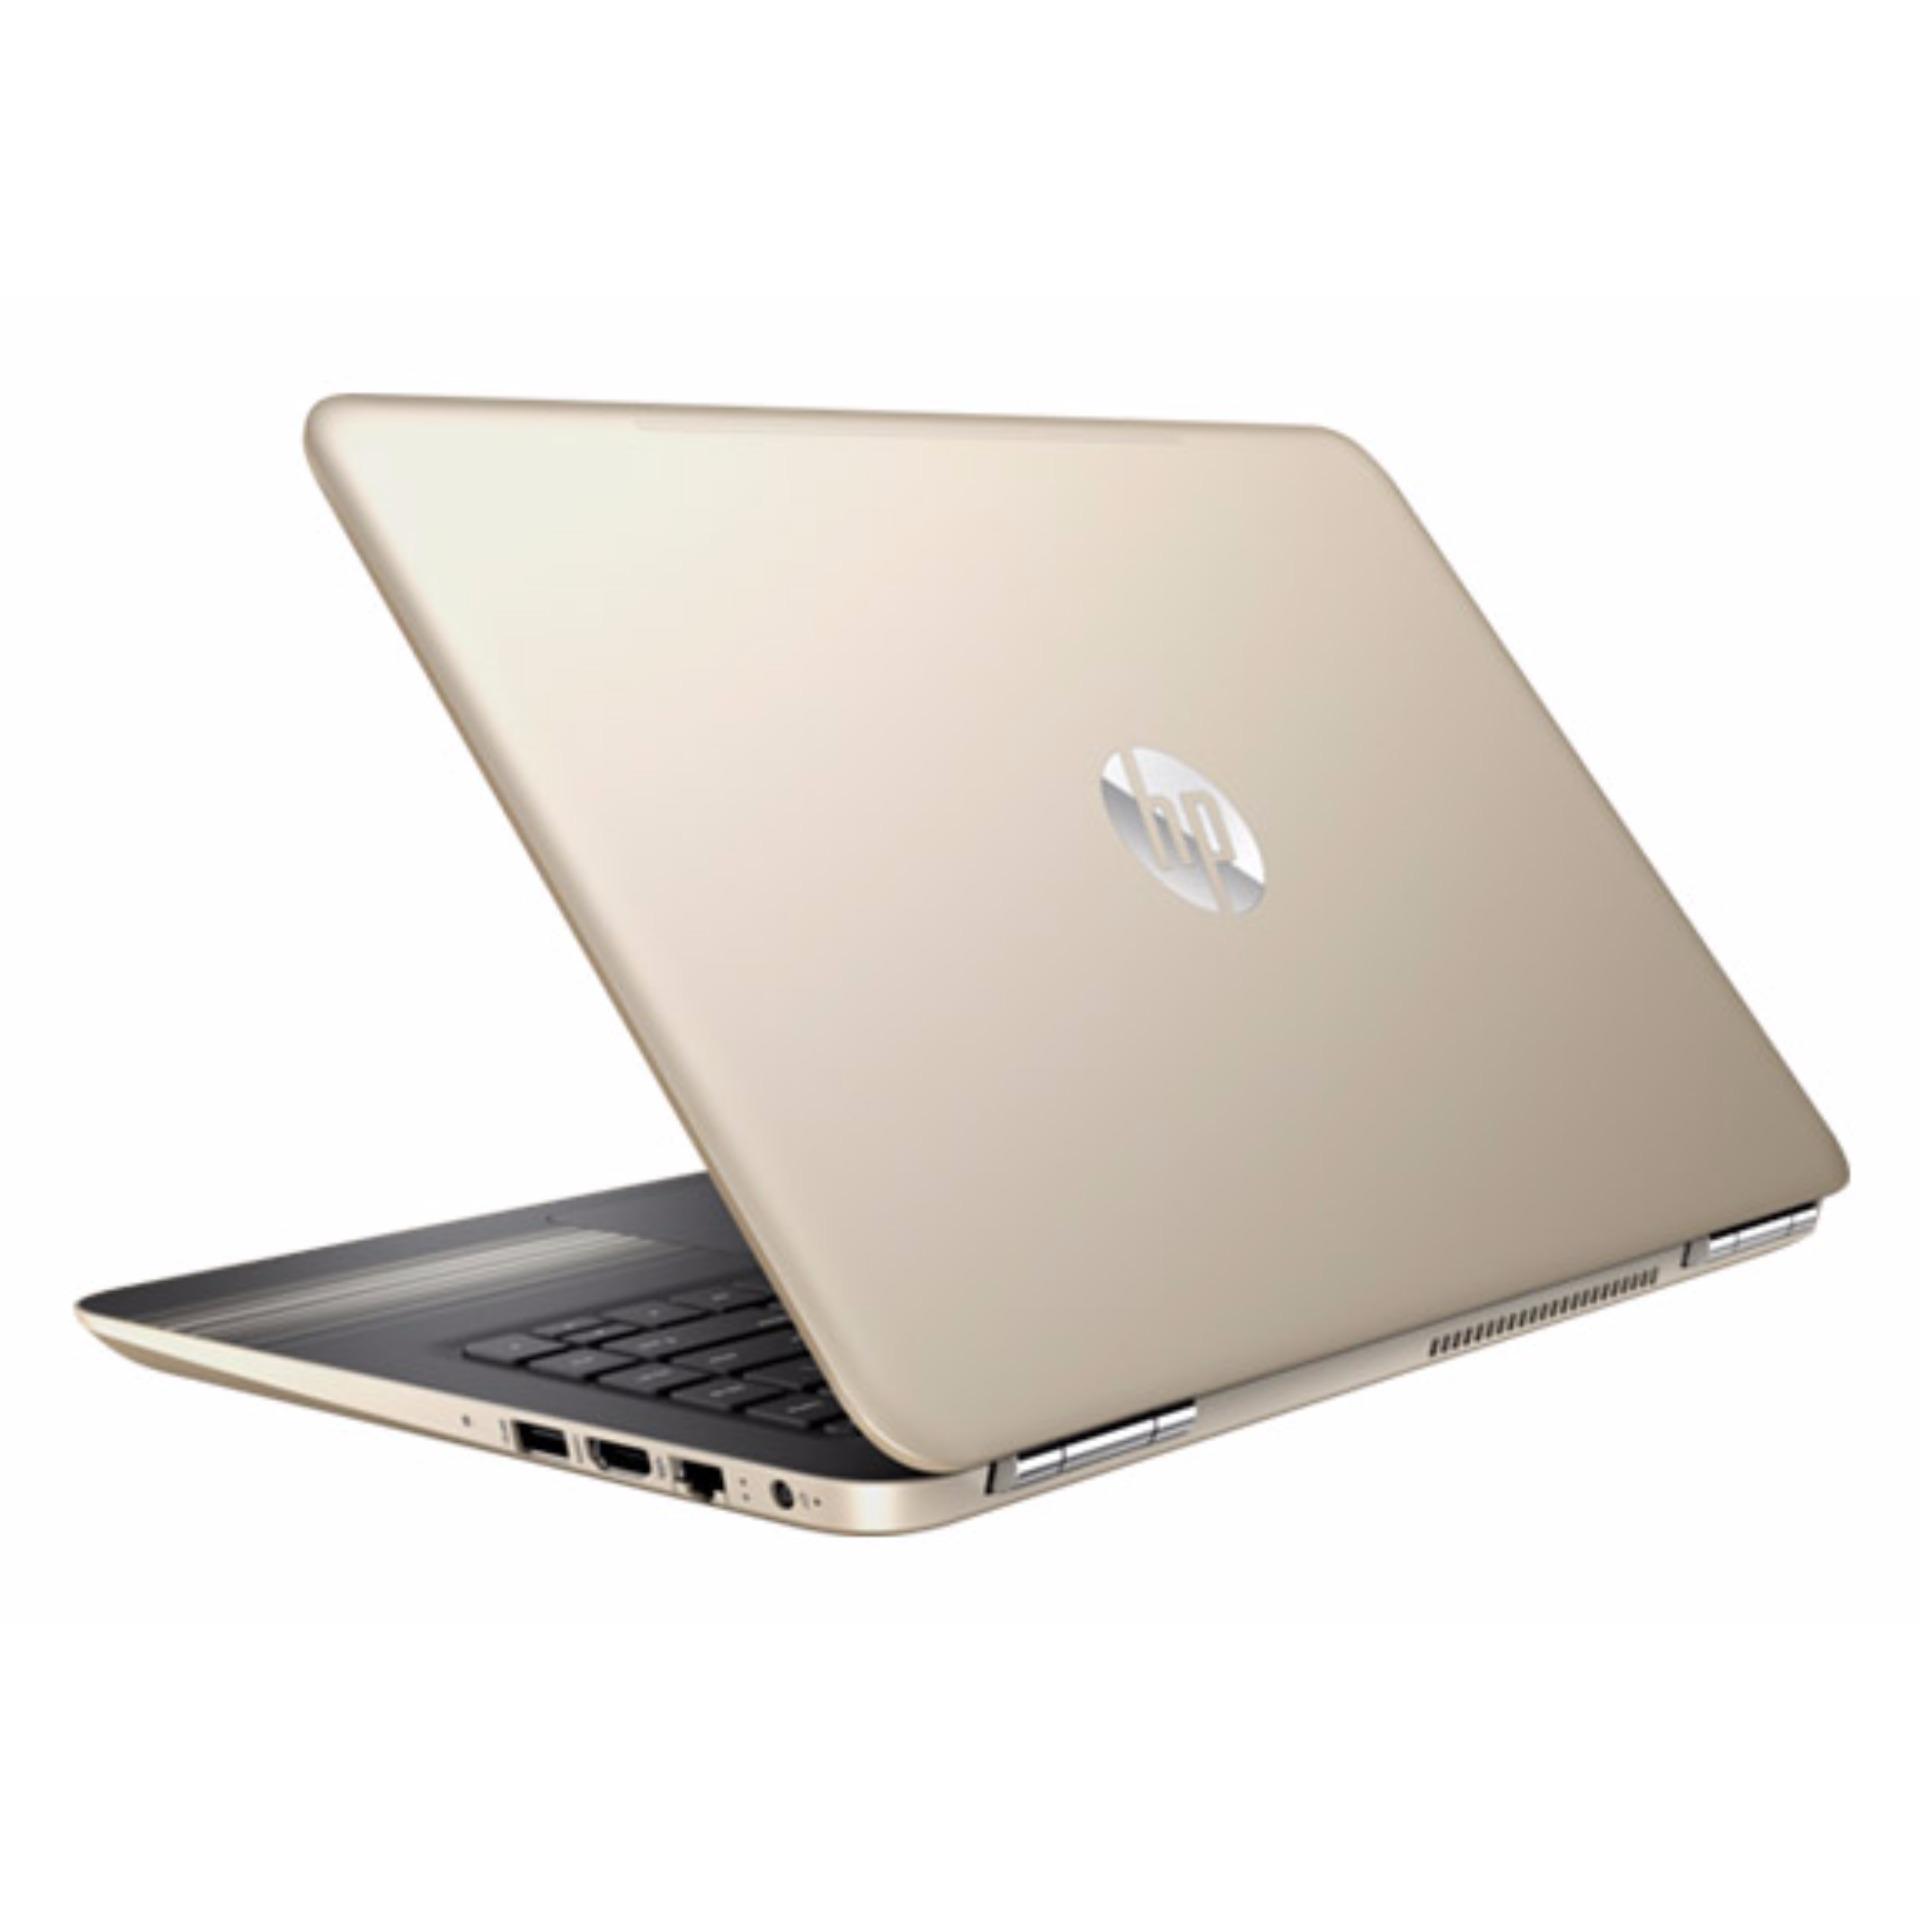 Laptop HP i3 7100U 14inch Pavilion AL115TU - Hàng nhập khẩu